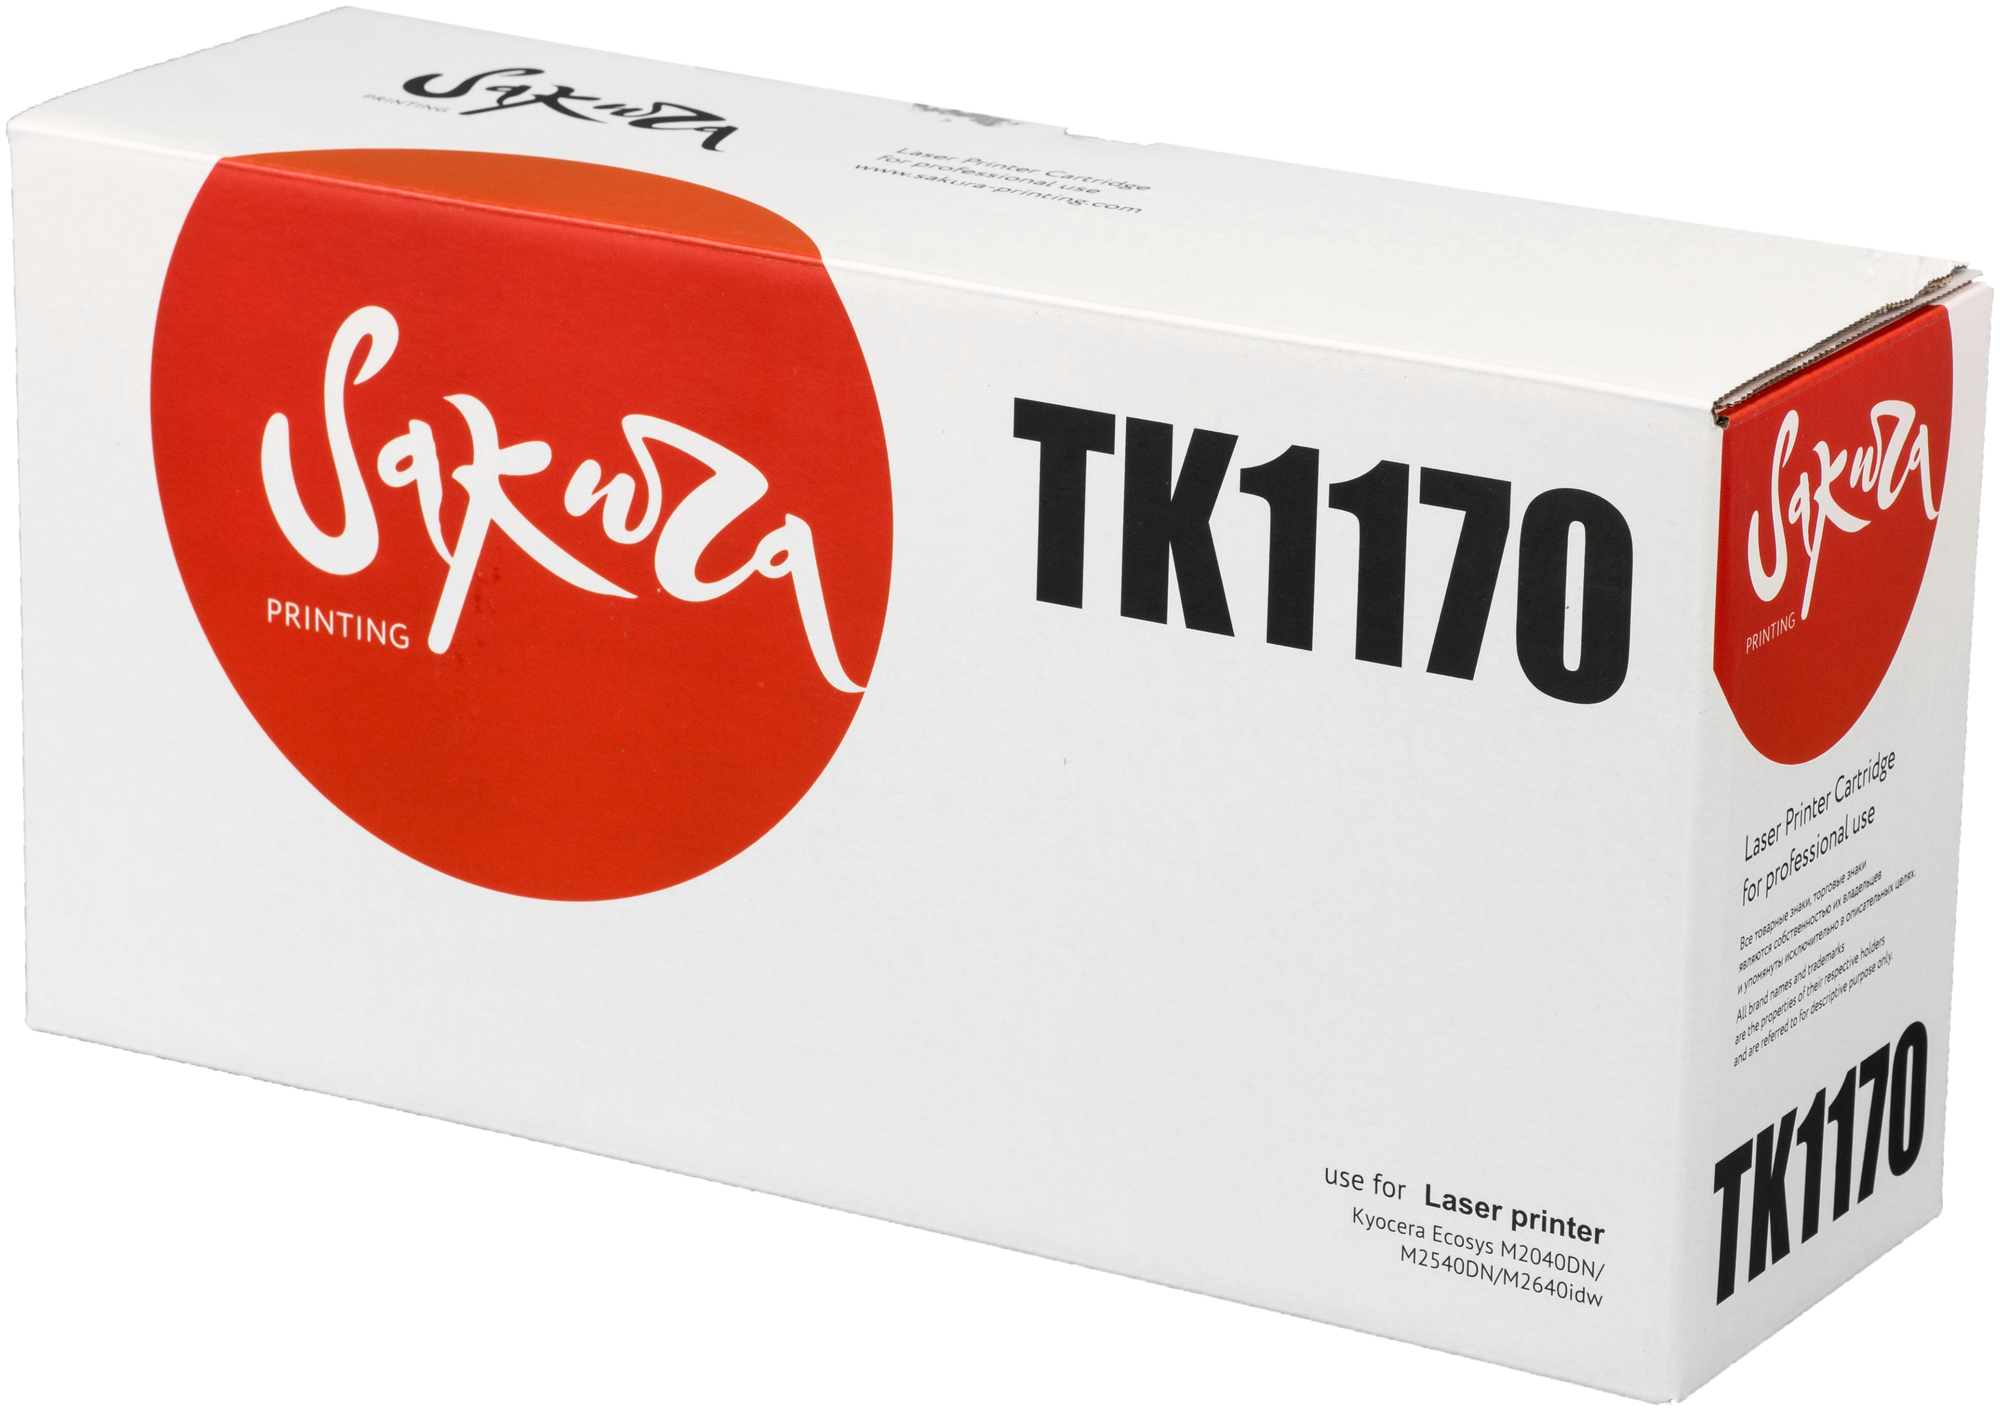 Картридж Sakura TK1170 для Kyocera Mita Ecosys m2040dn/ m2540dn/ m2640idw черный 7200стр .